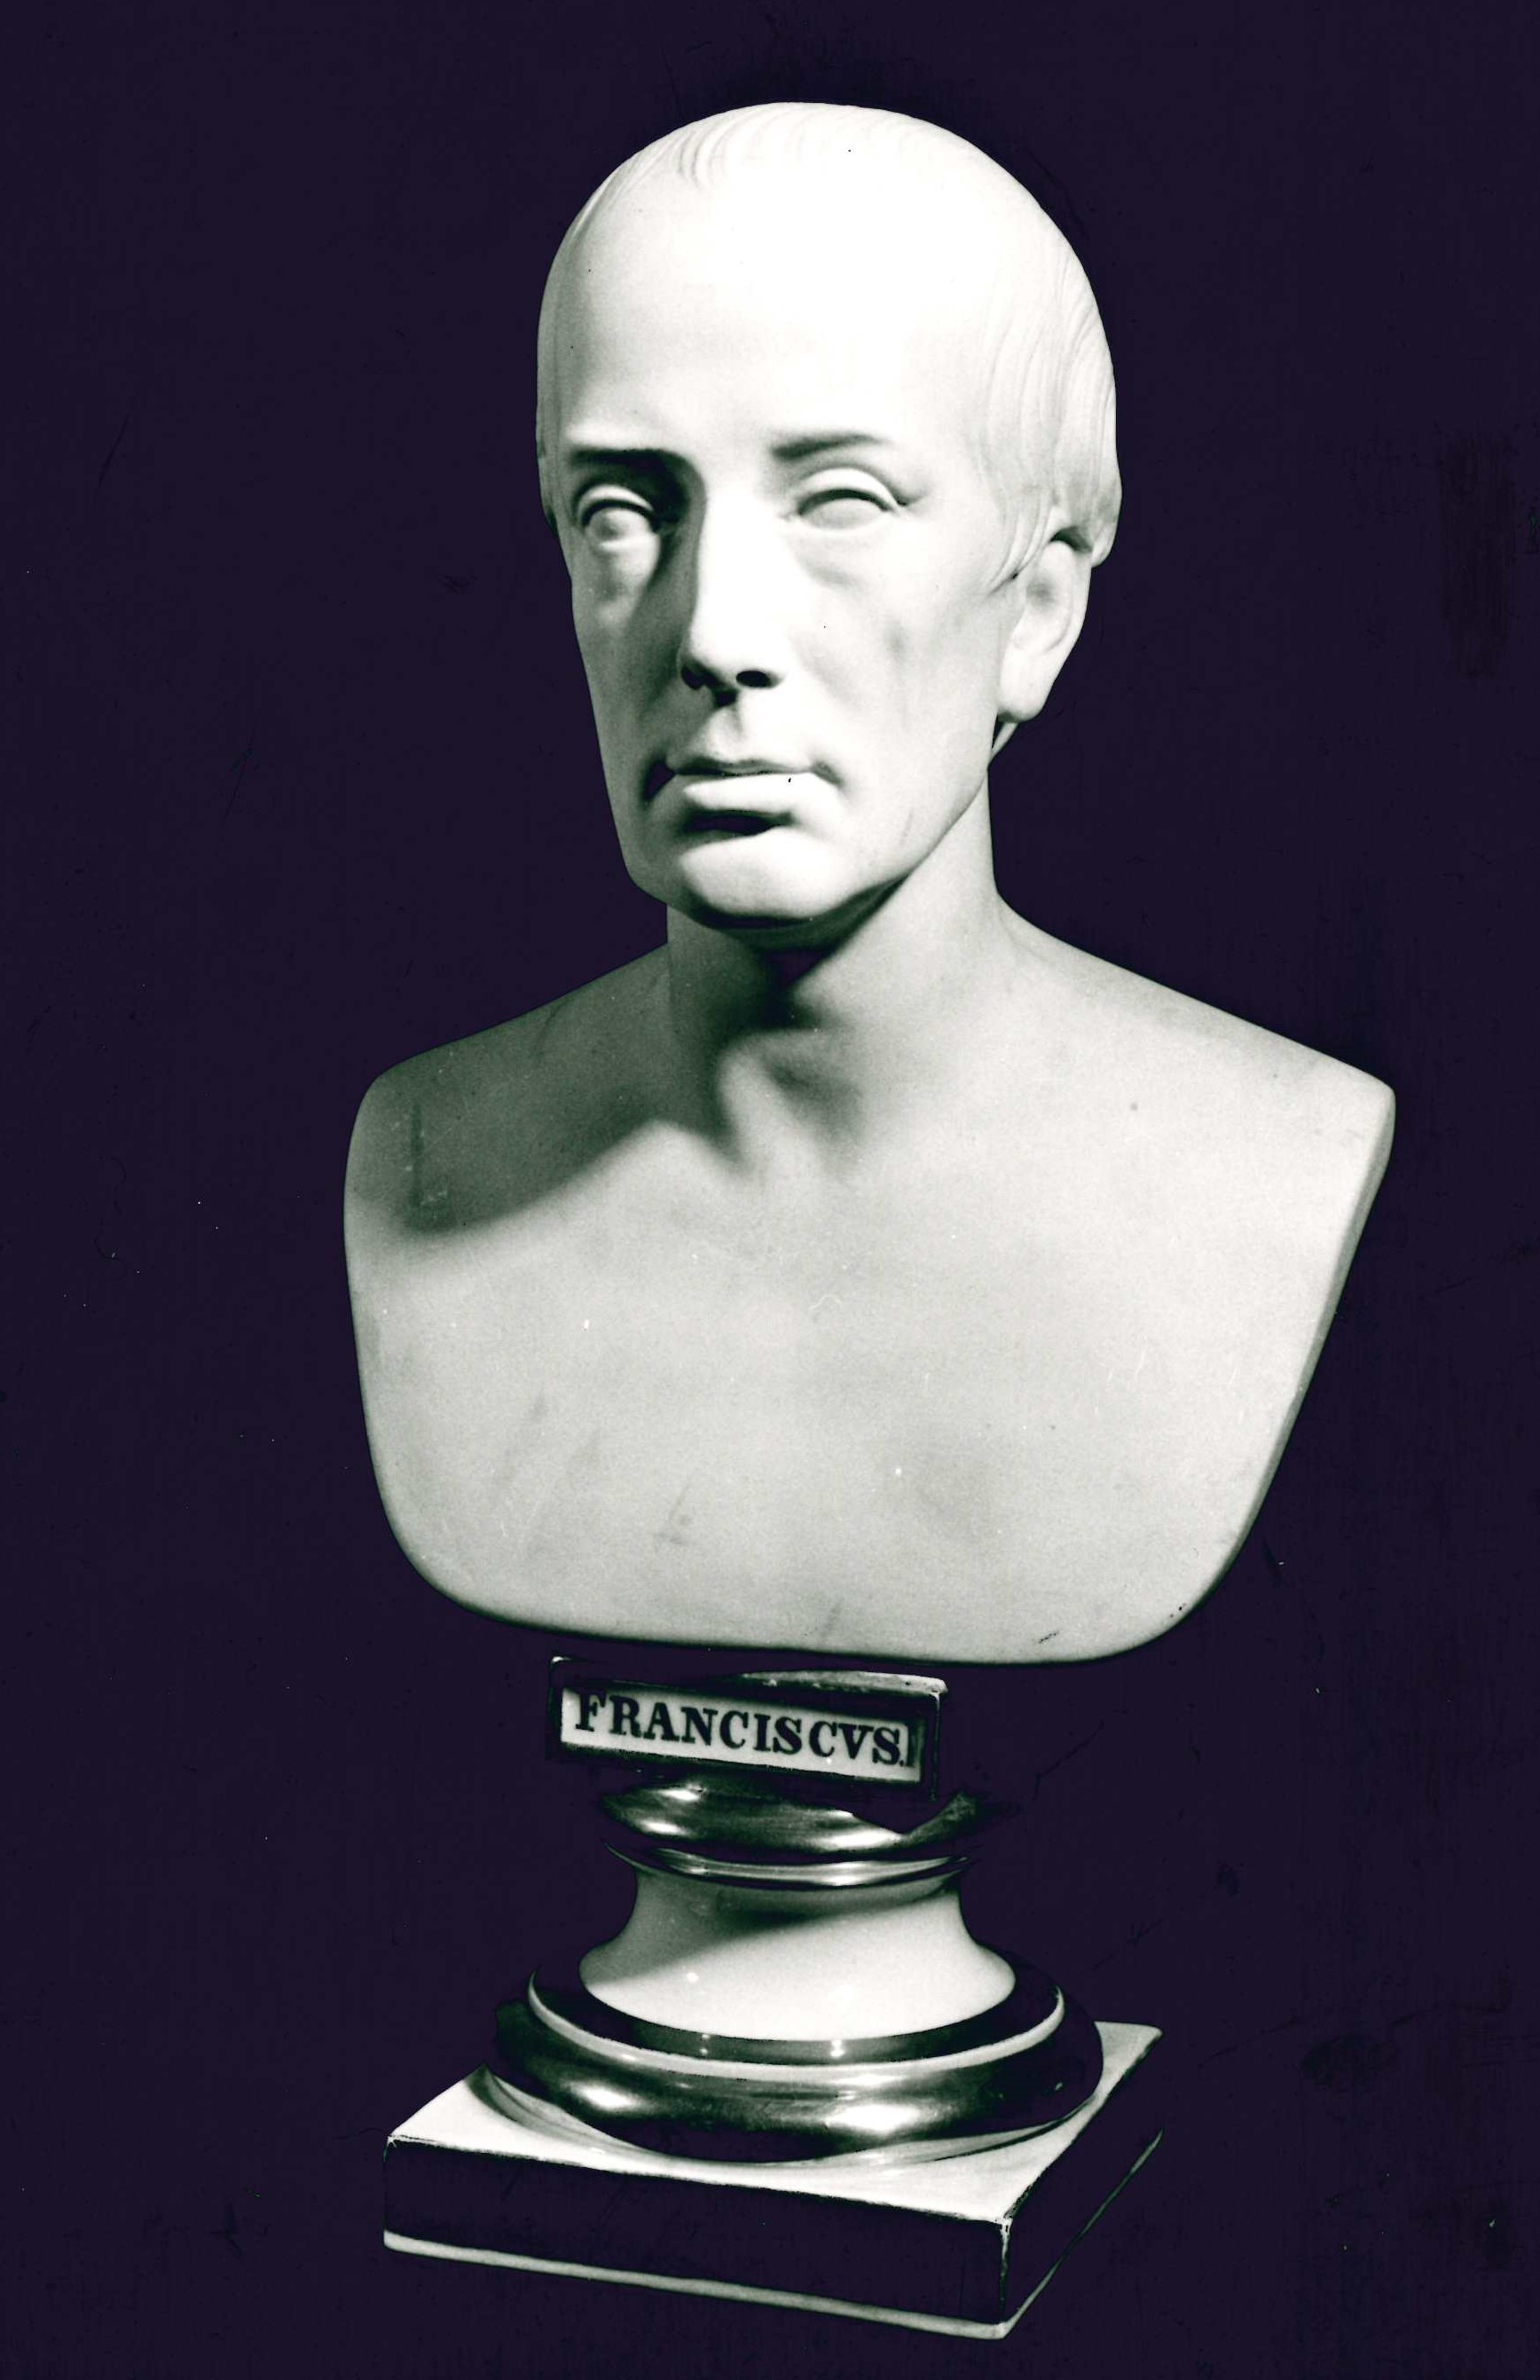 Francesco I Imperatore d'Austria, busto ritratto di Francesco II d'Asburgo-Lorena sovrano del Sacro Romano Impero, poi Francesco I Imperatore d'Austria (scultura) - ambito europeo (prima metà sec. XIX)